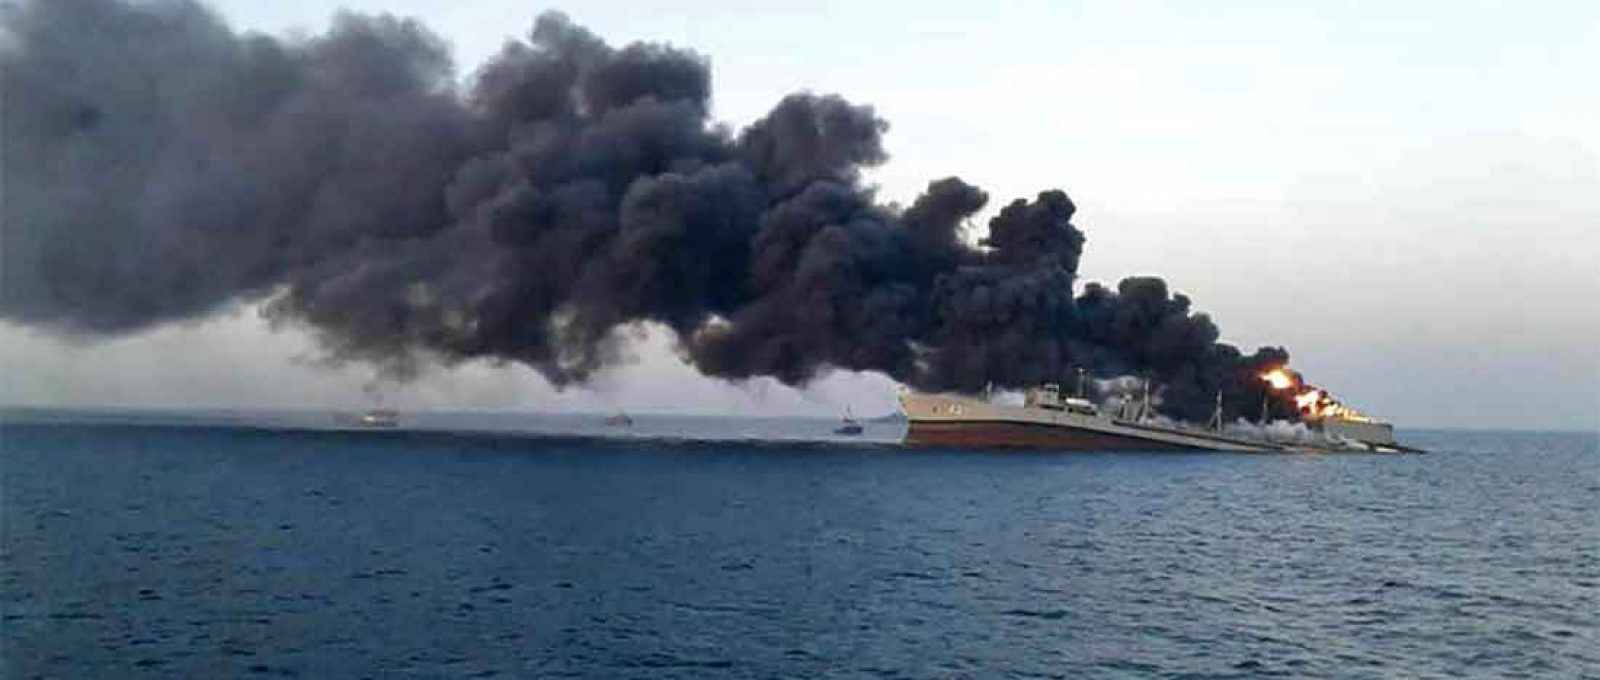 O Kharg, maior navio da Marinha do Irã, foi escalado para participar de exercícios de treinamento quando pegou fogo em circunstâncias não esclarecidas e afundou (Foto: Wana/Reuters).